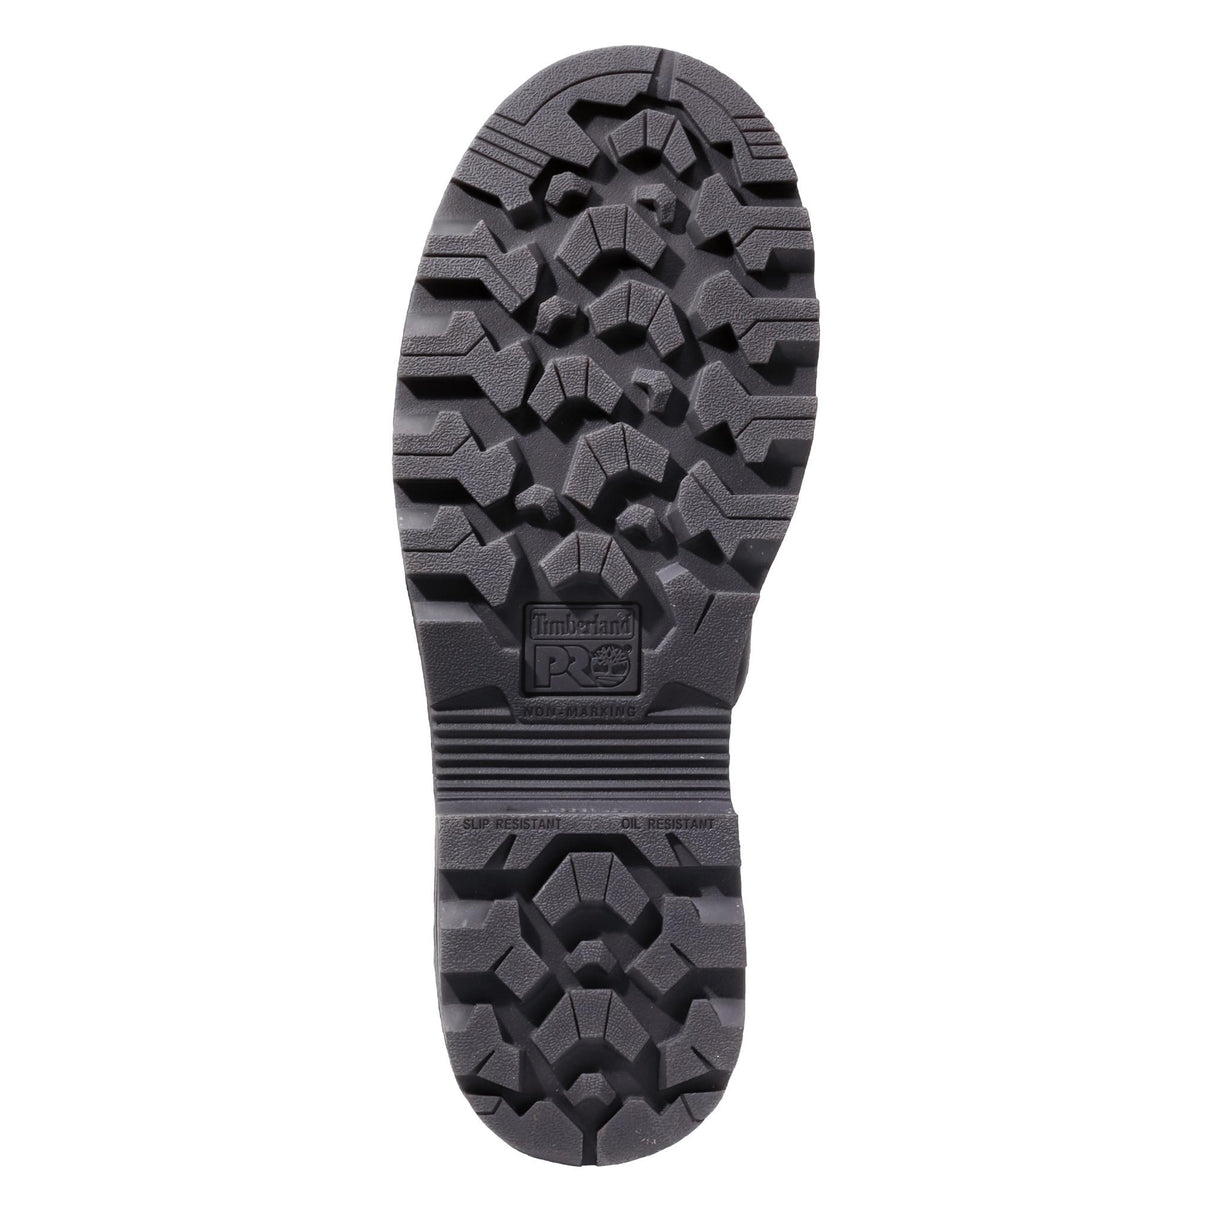 Magnitude Men's Composite-Toe Boot Waterproof Black PR